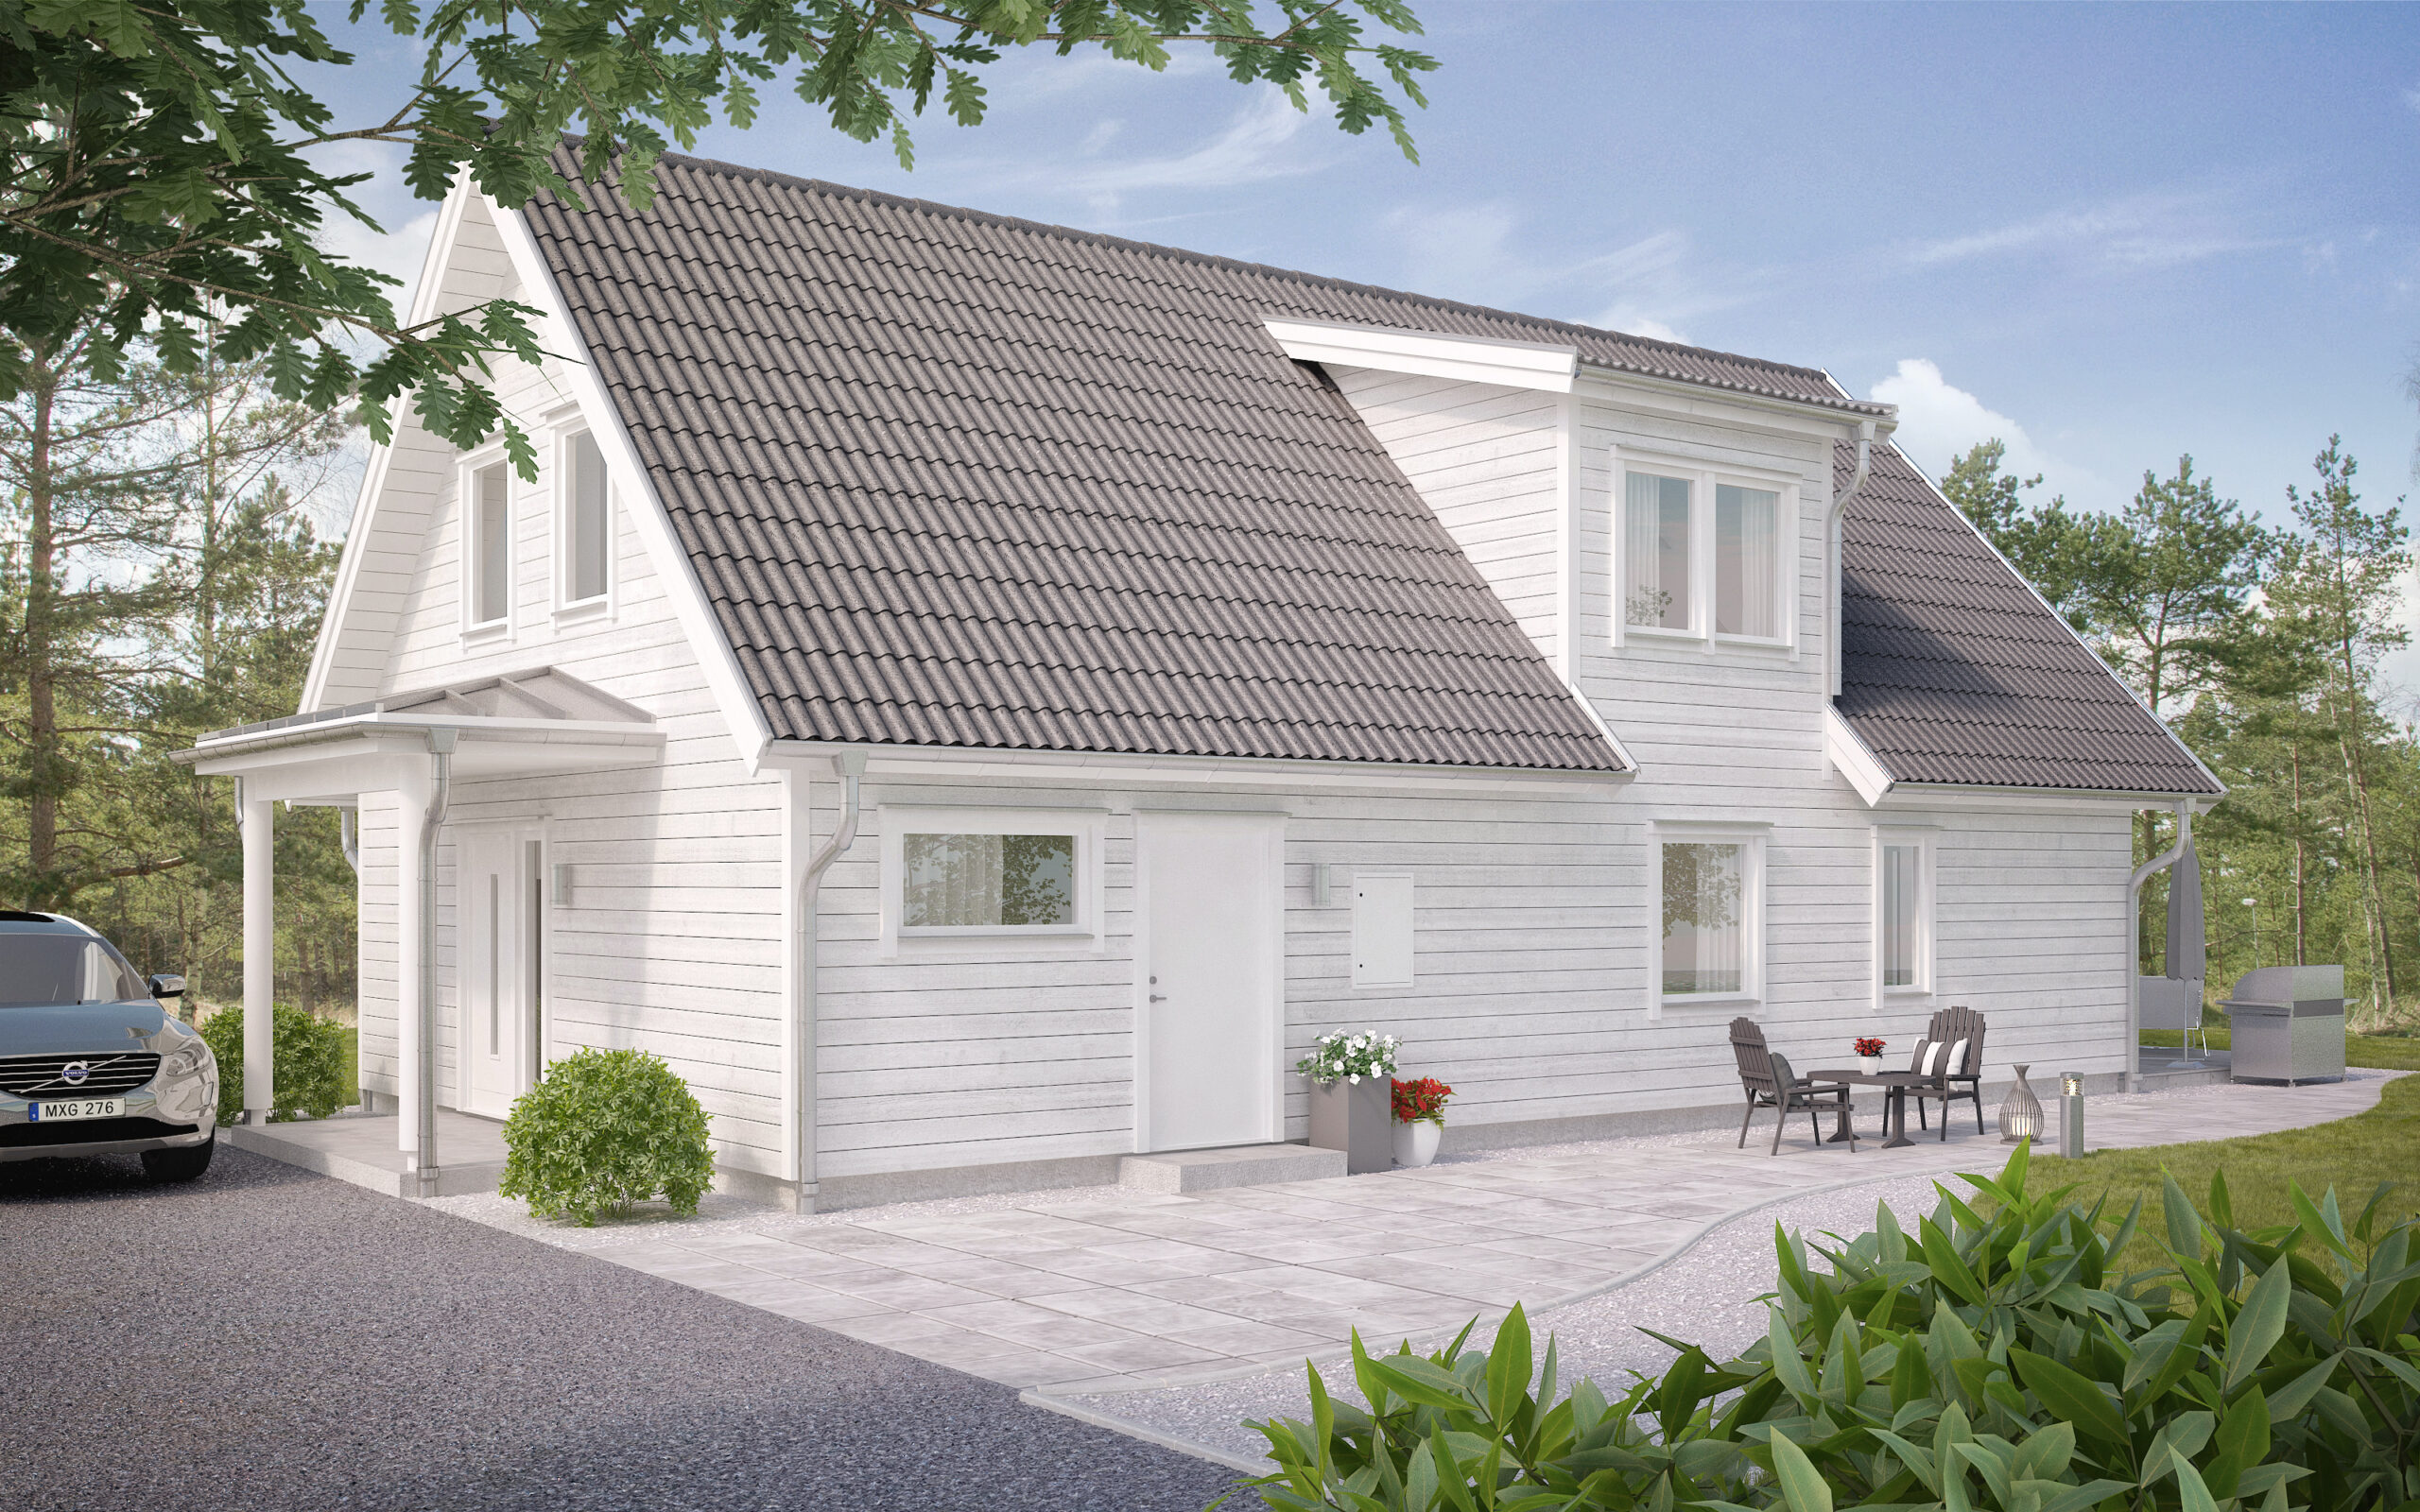 villa Nyatorp ett gavelställt 1.5-planshus med vit panel och takkupa